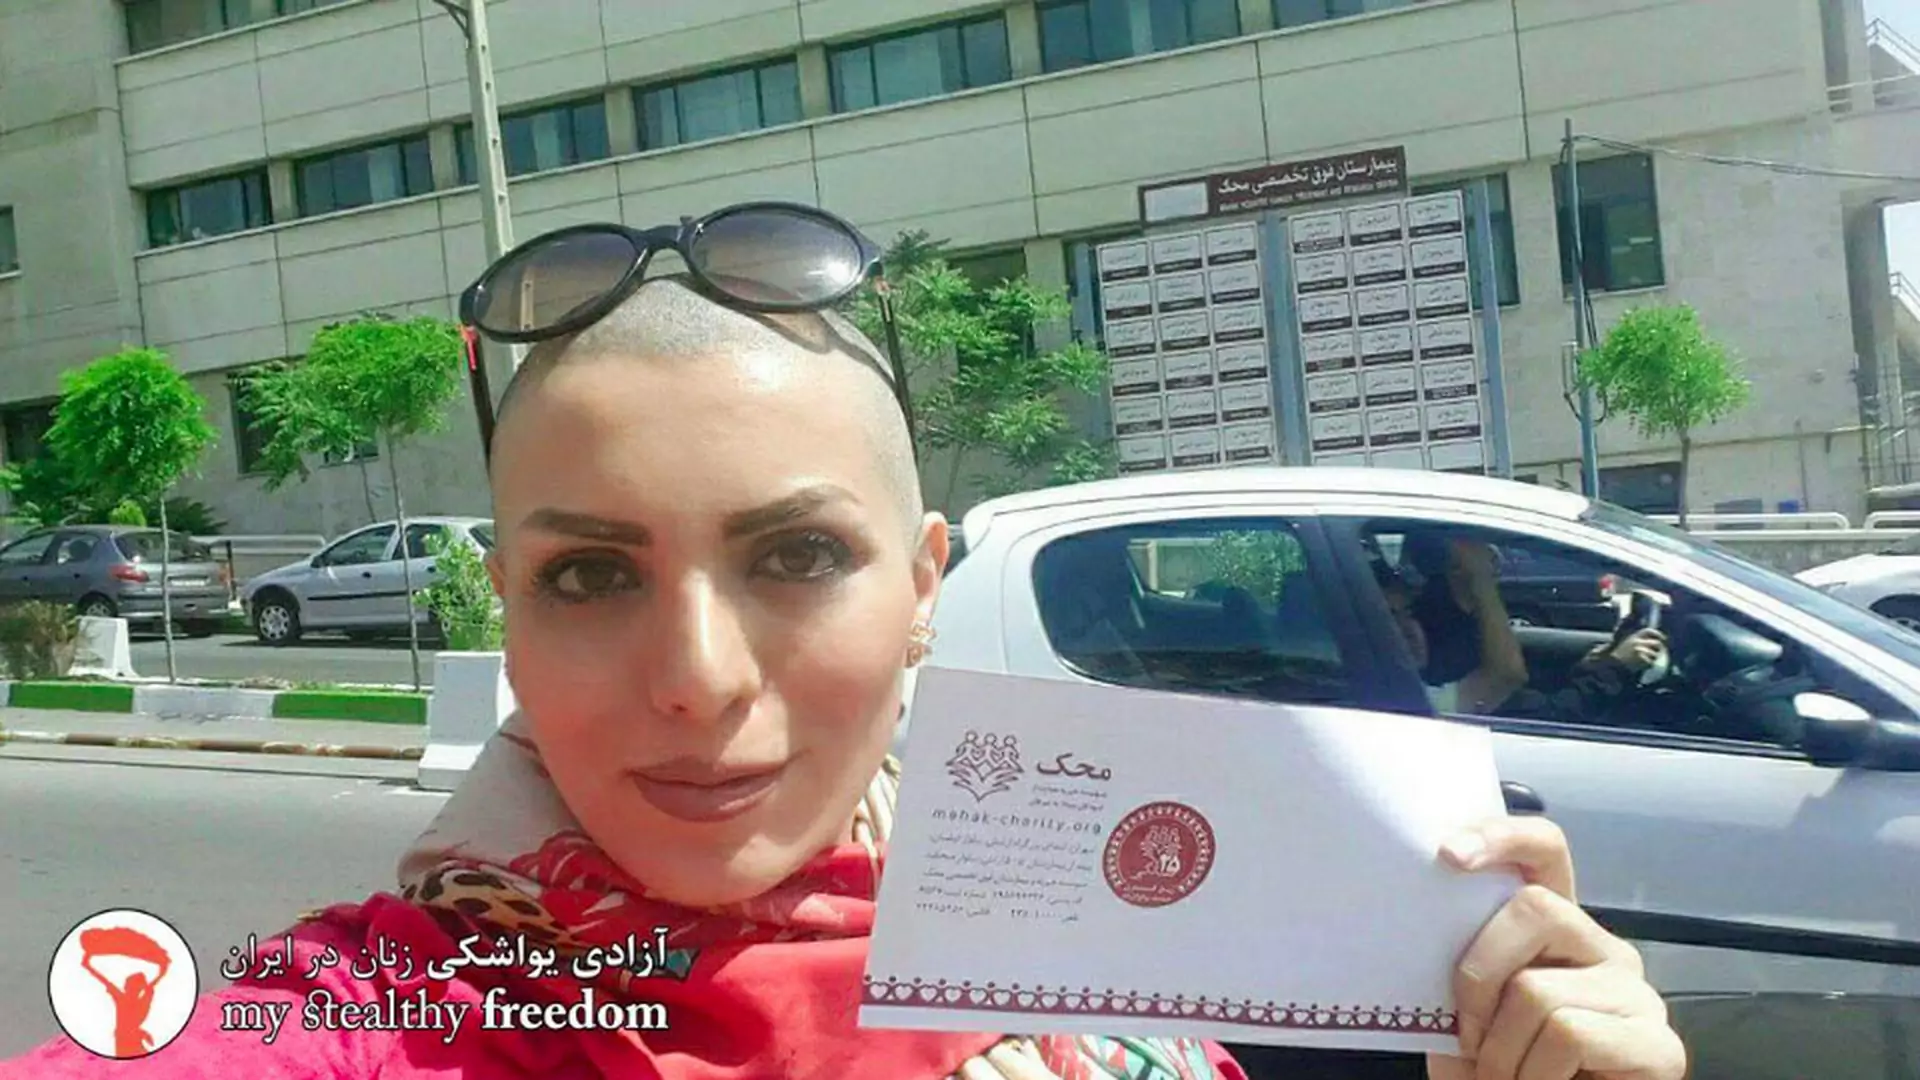 Iranka goląc głowę wypowiada walkę noszeniu chusty: "nie mam włosów, nie możecie mnie aresztować"